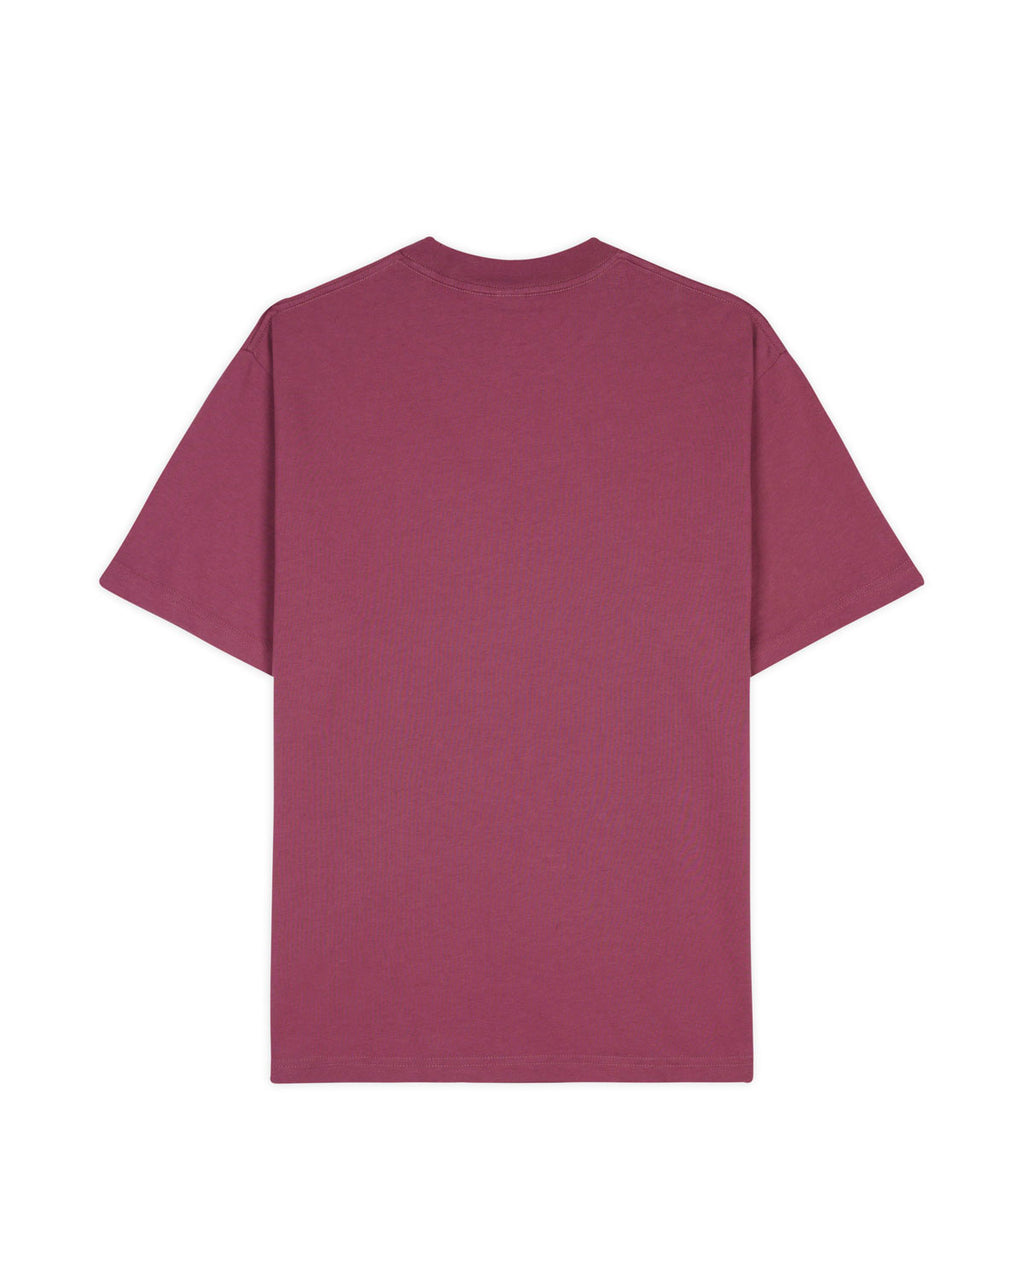 Deadball Racquet Club T-shirt- Raspberry 3